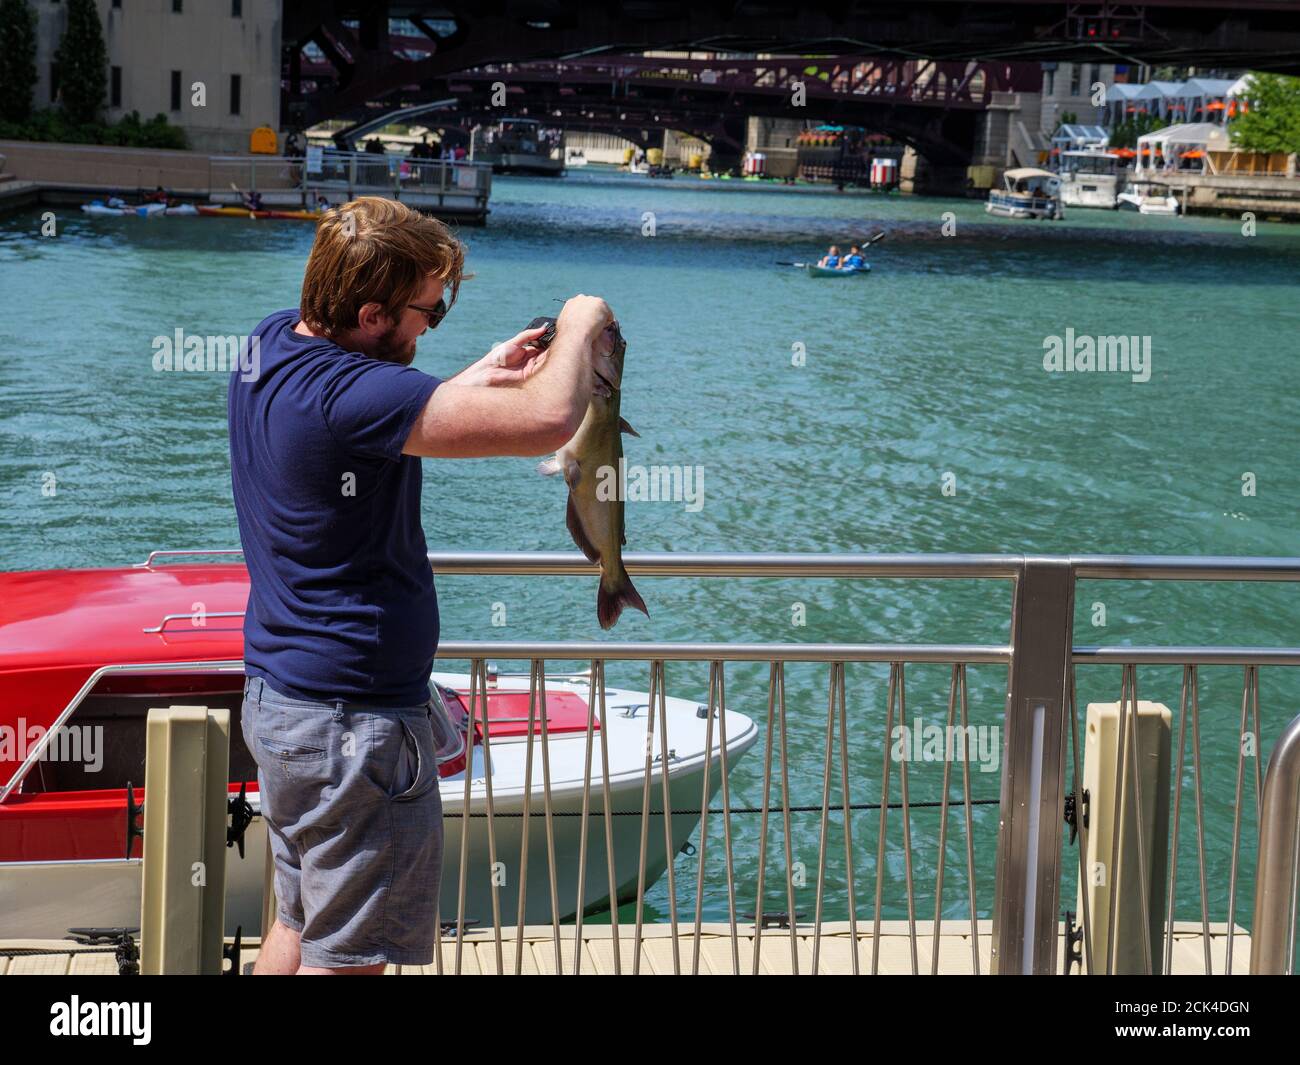 Mann Wiegung Kanal Wels er gefangen, wog der Fisch über fünf Pfund / 2,3kg. Chicago Riverwalk. Kanalwelse können bis zu 50lbs/23kg groß werden. Stockfoto